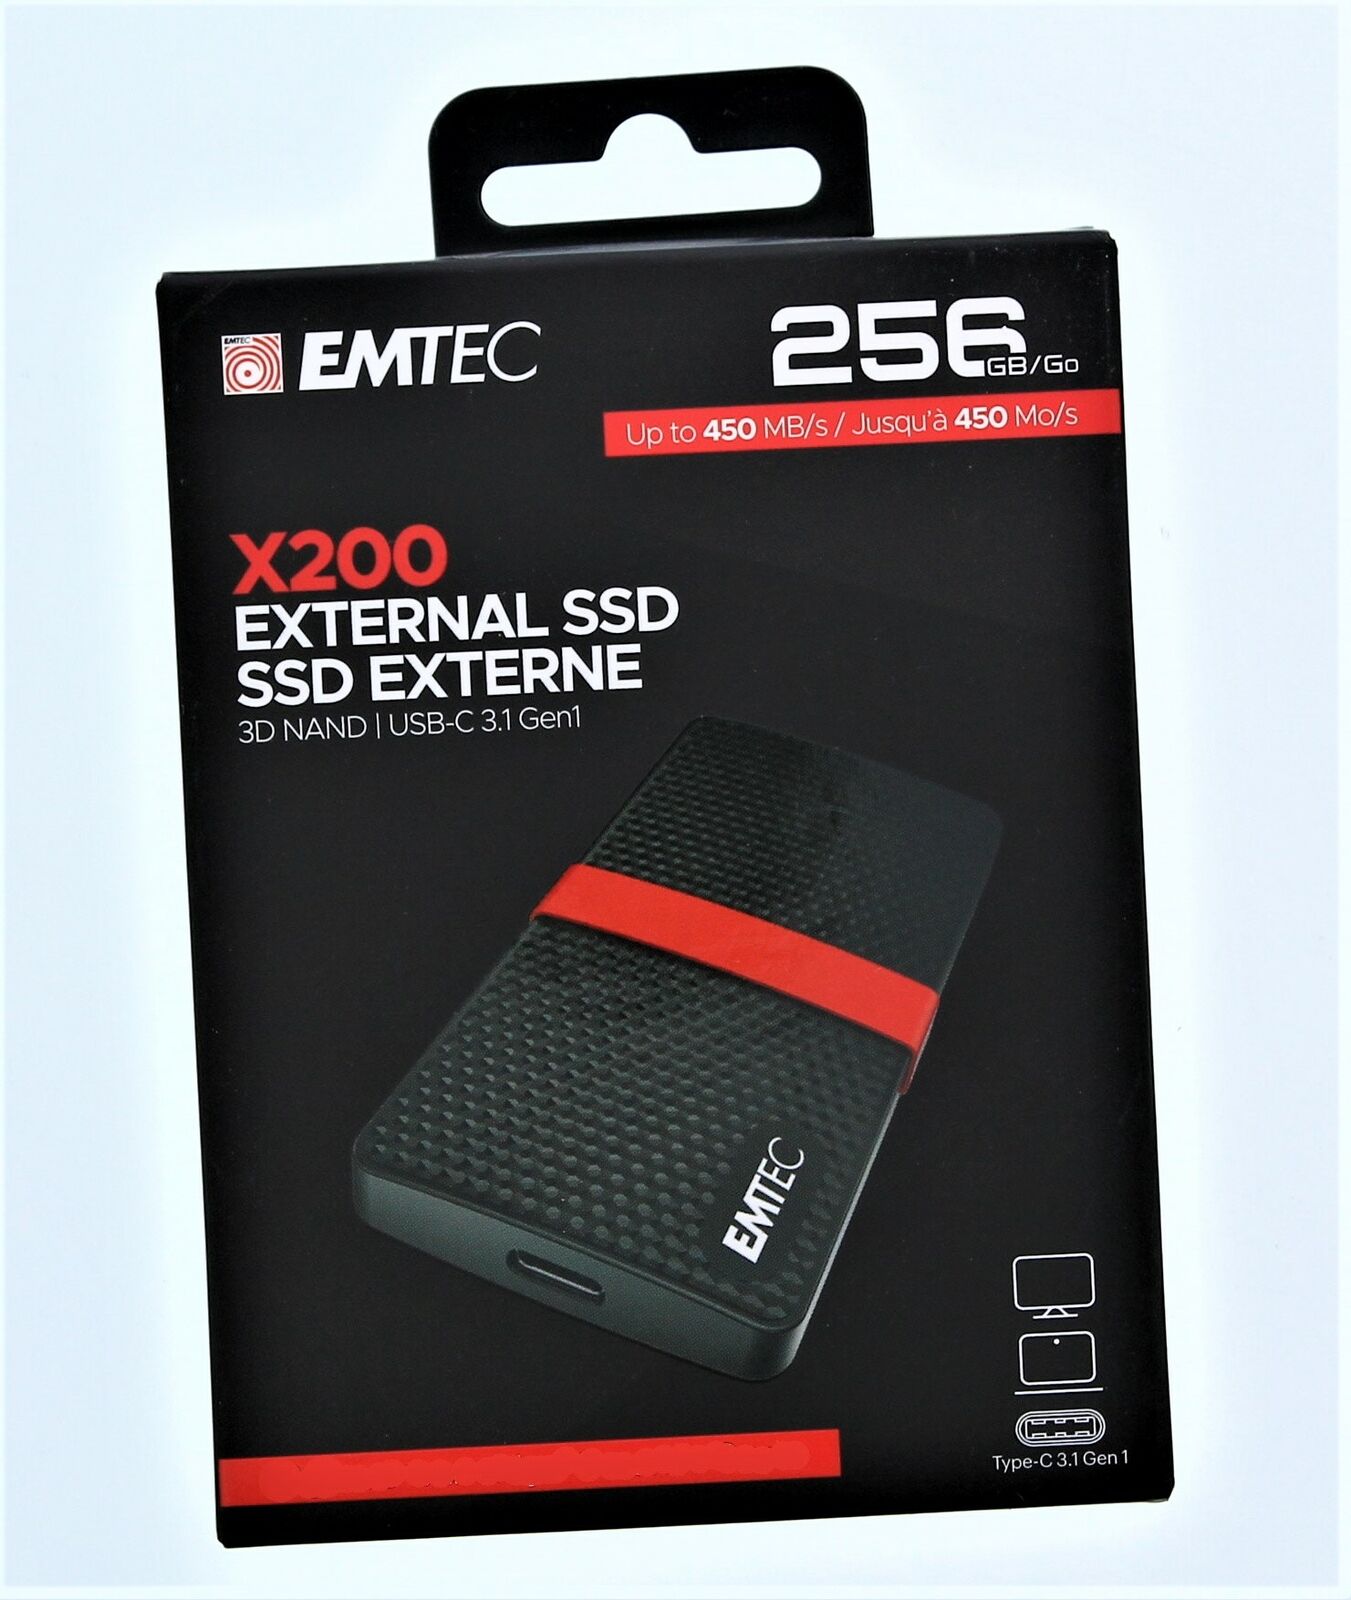 EMTEC X200 External SSD USB-C 3.1 Gen1 256GB/Go